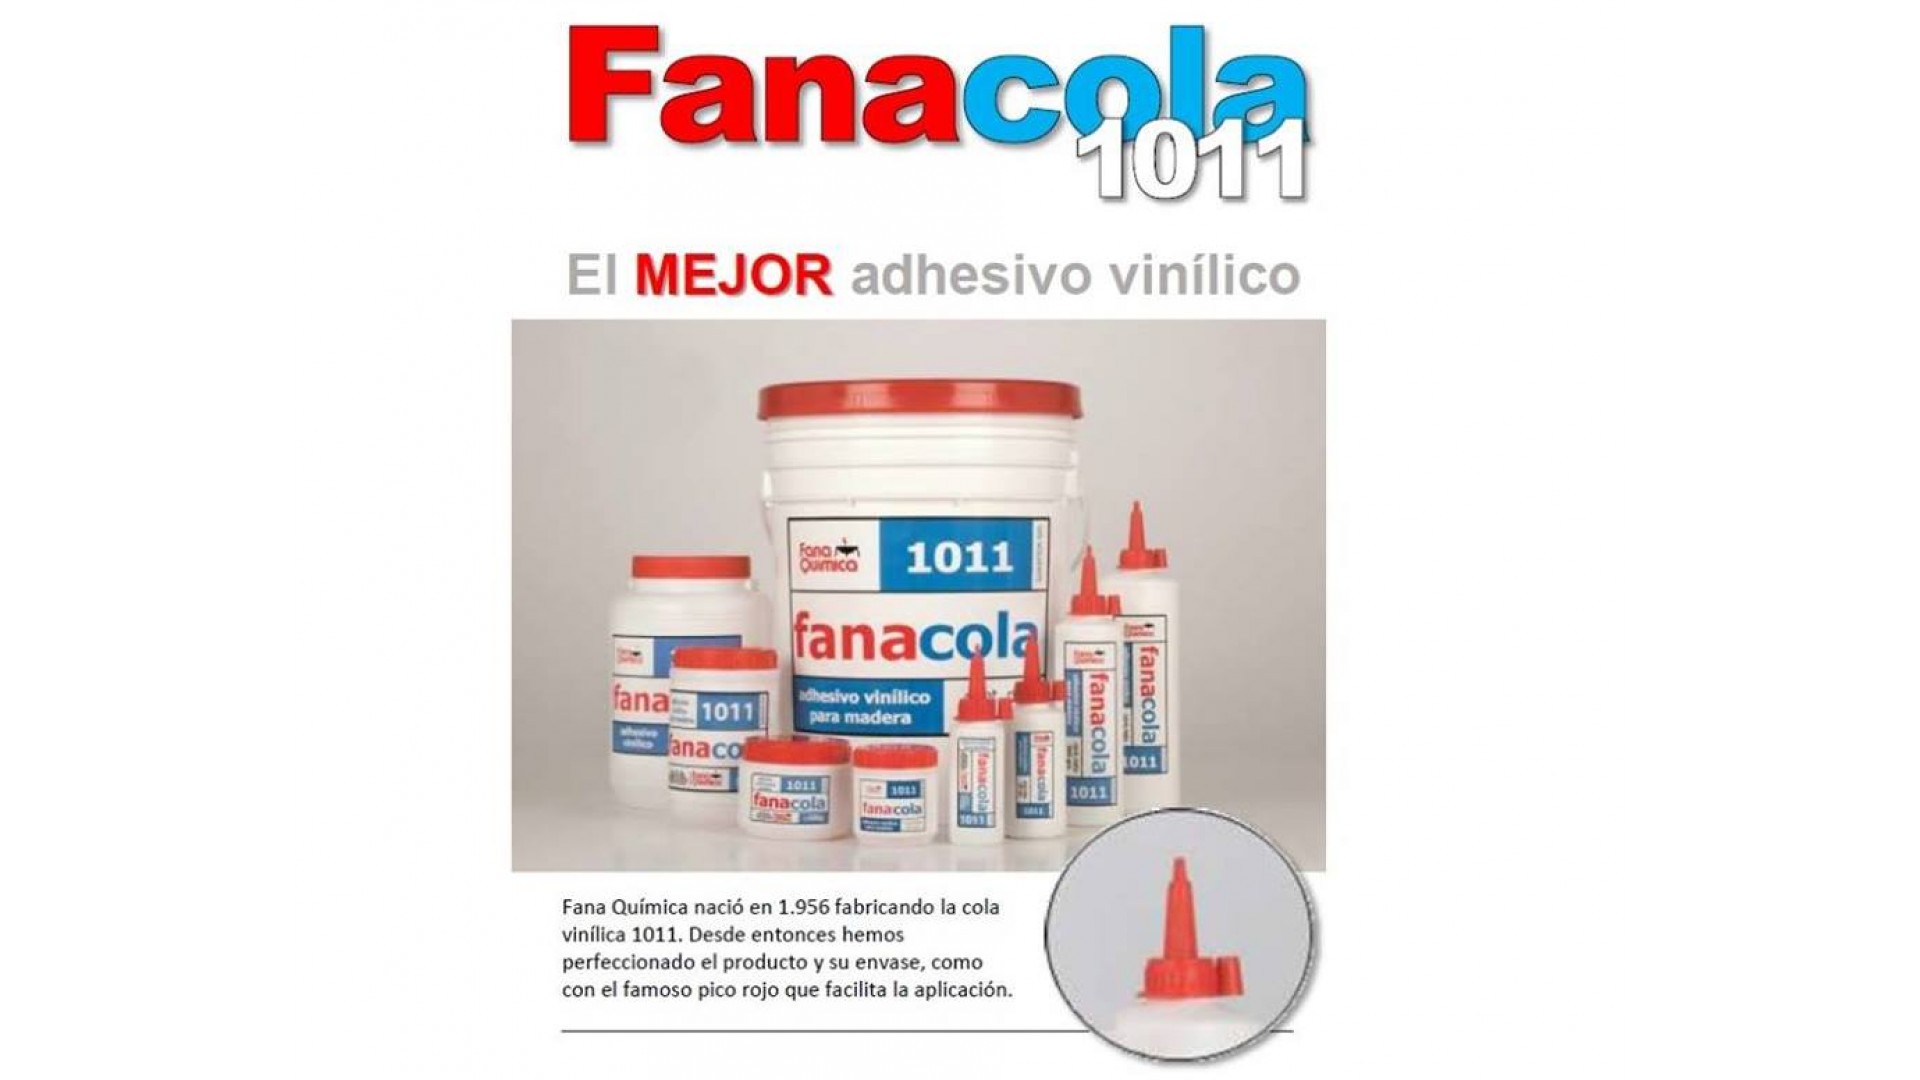 Fanacola 1011